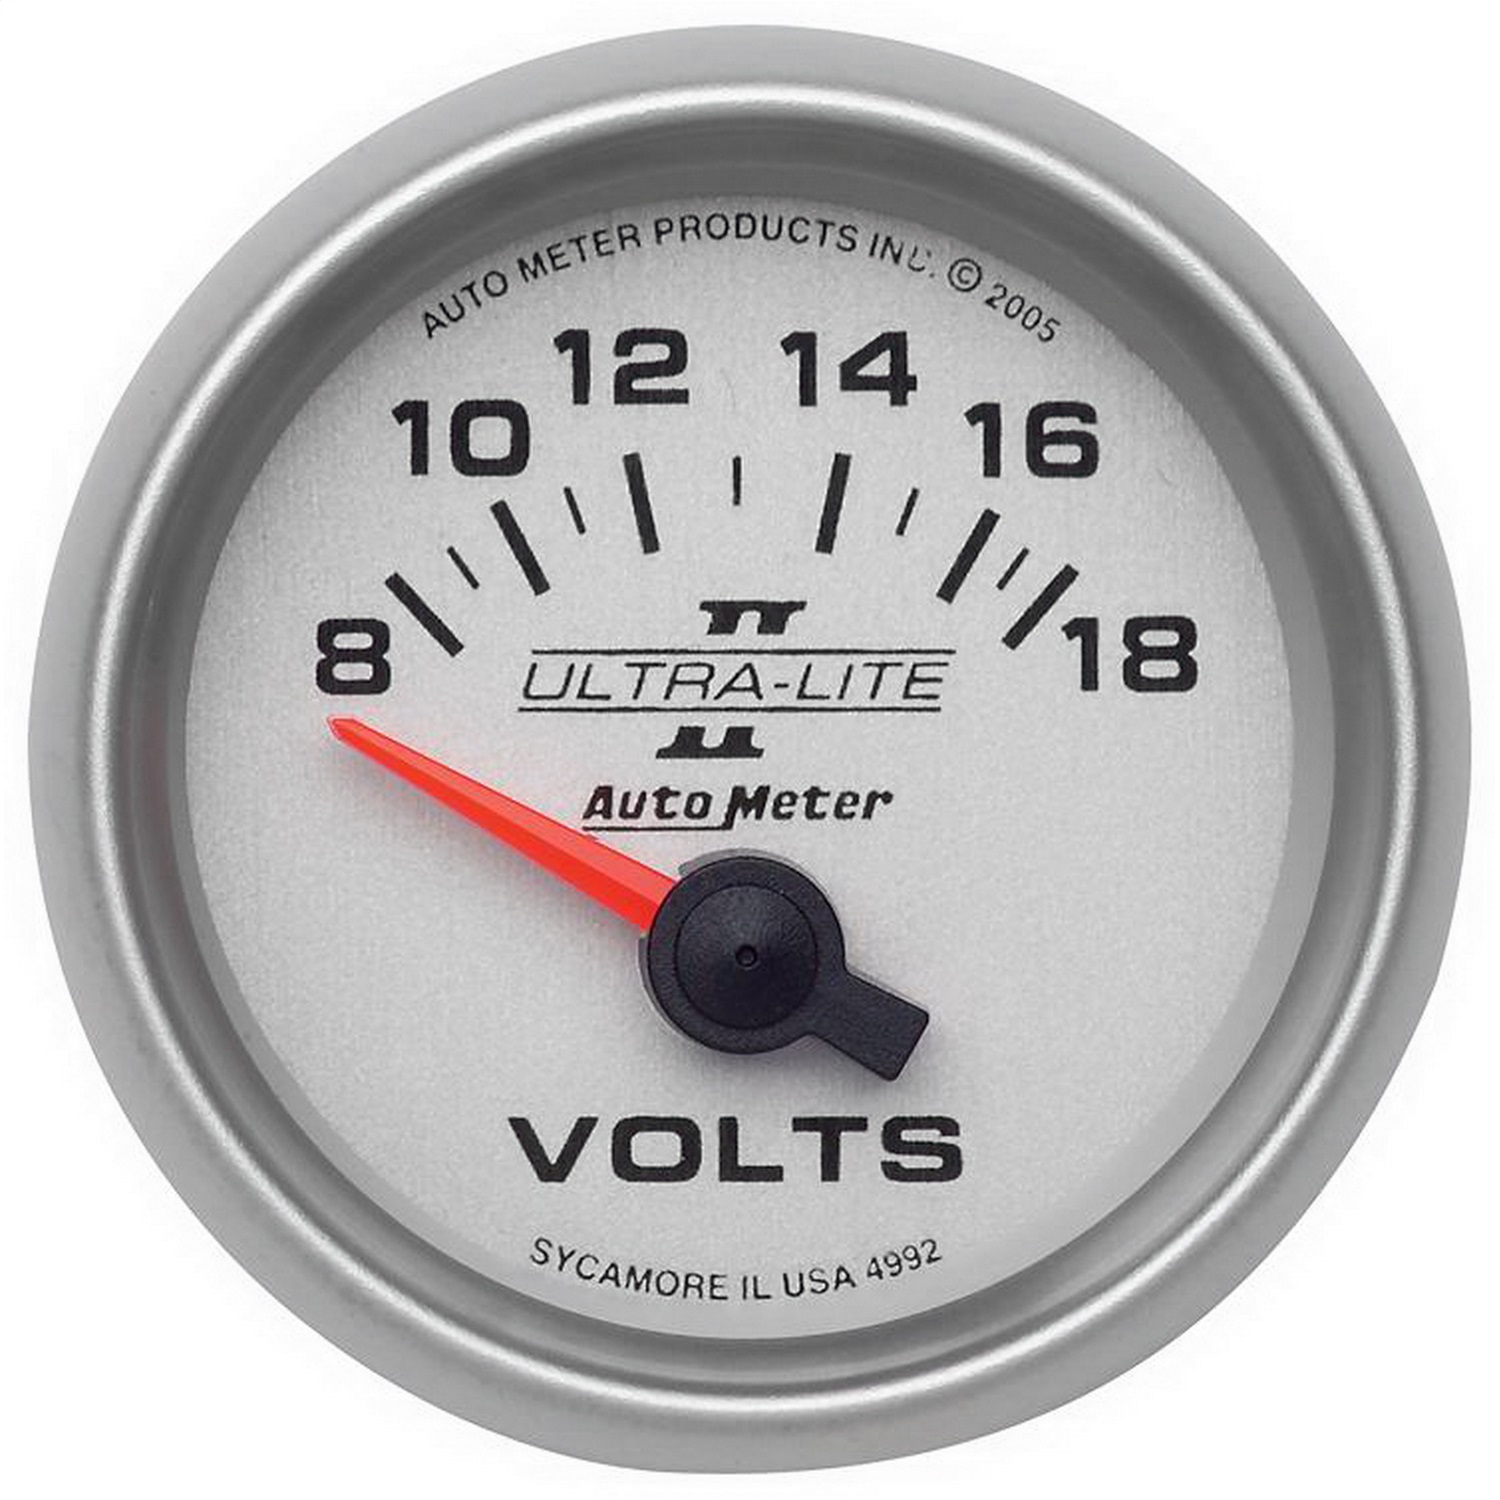 Auto Meter Auto Meter 4992 Ultra-Lite II; Electric Voltmeter Gauge